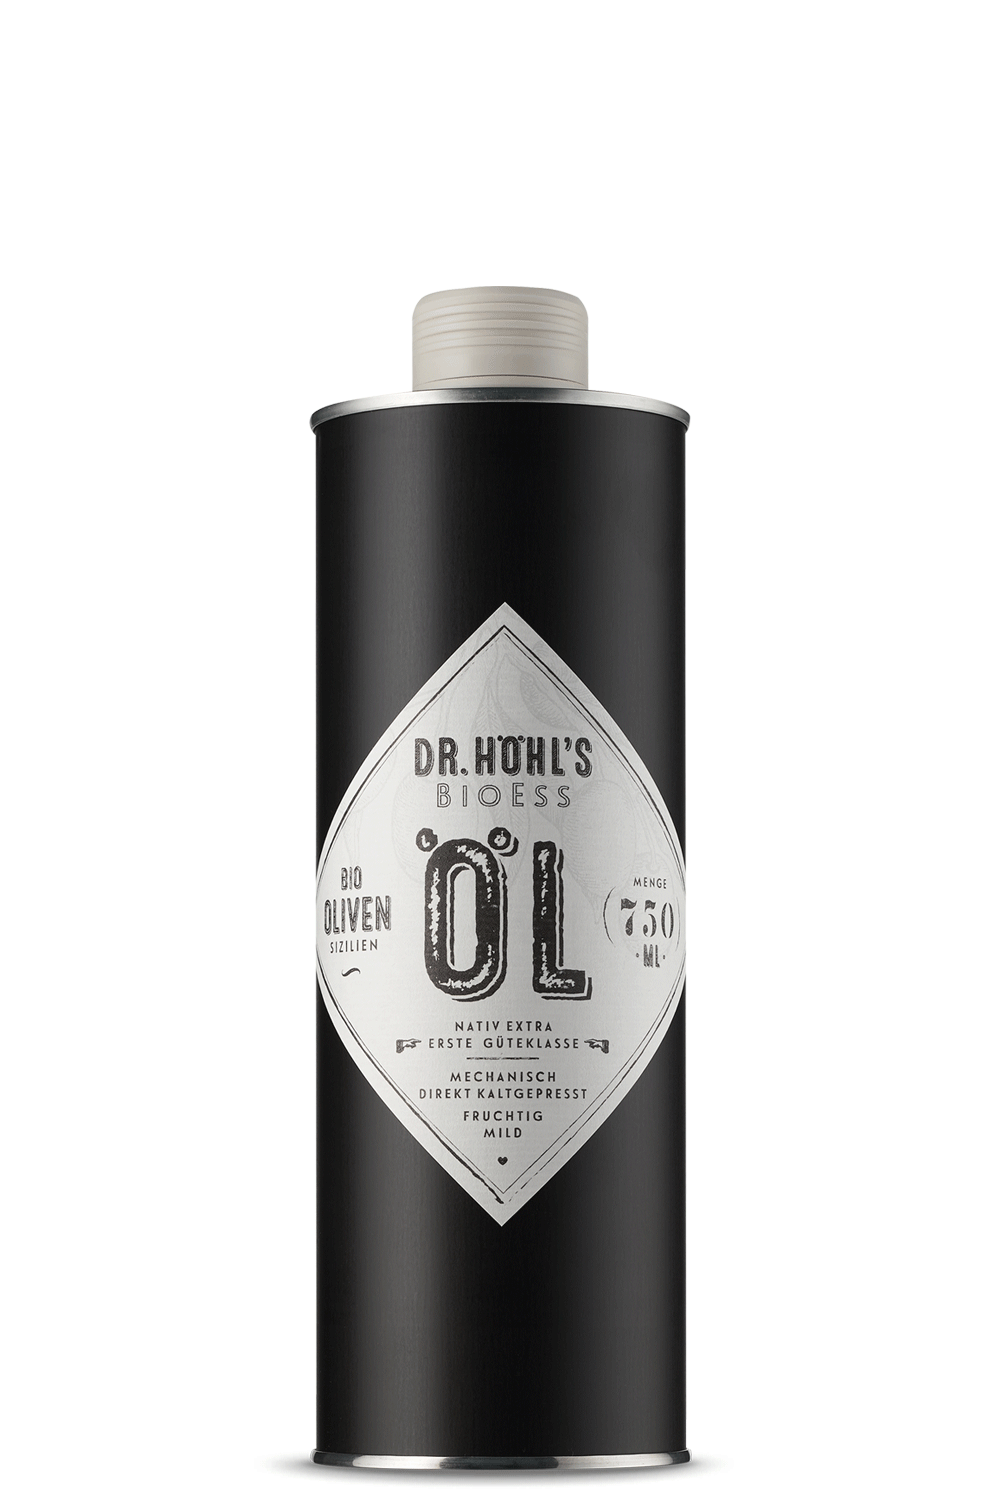 schwarze dose olivenöl mit minimalistischem etikett in rautenform